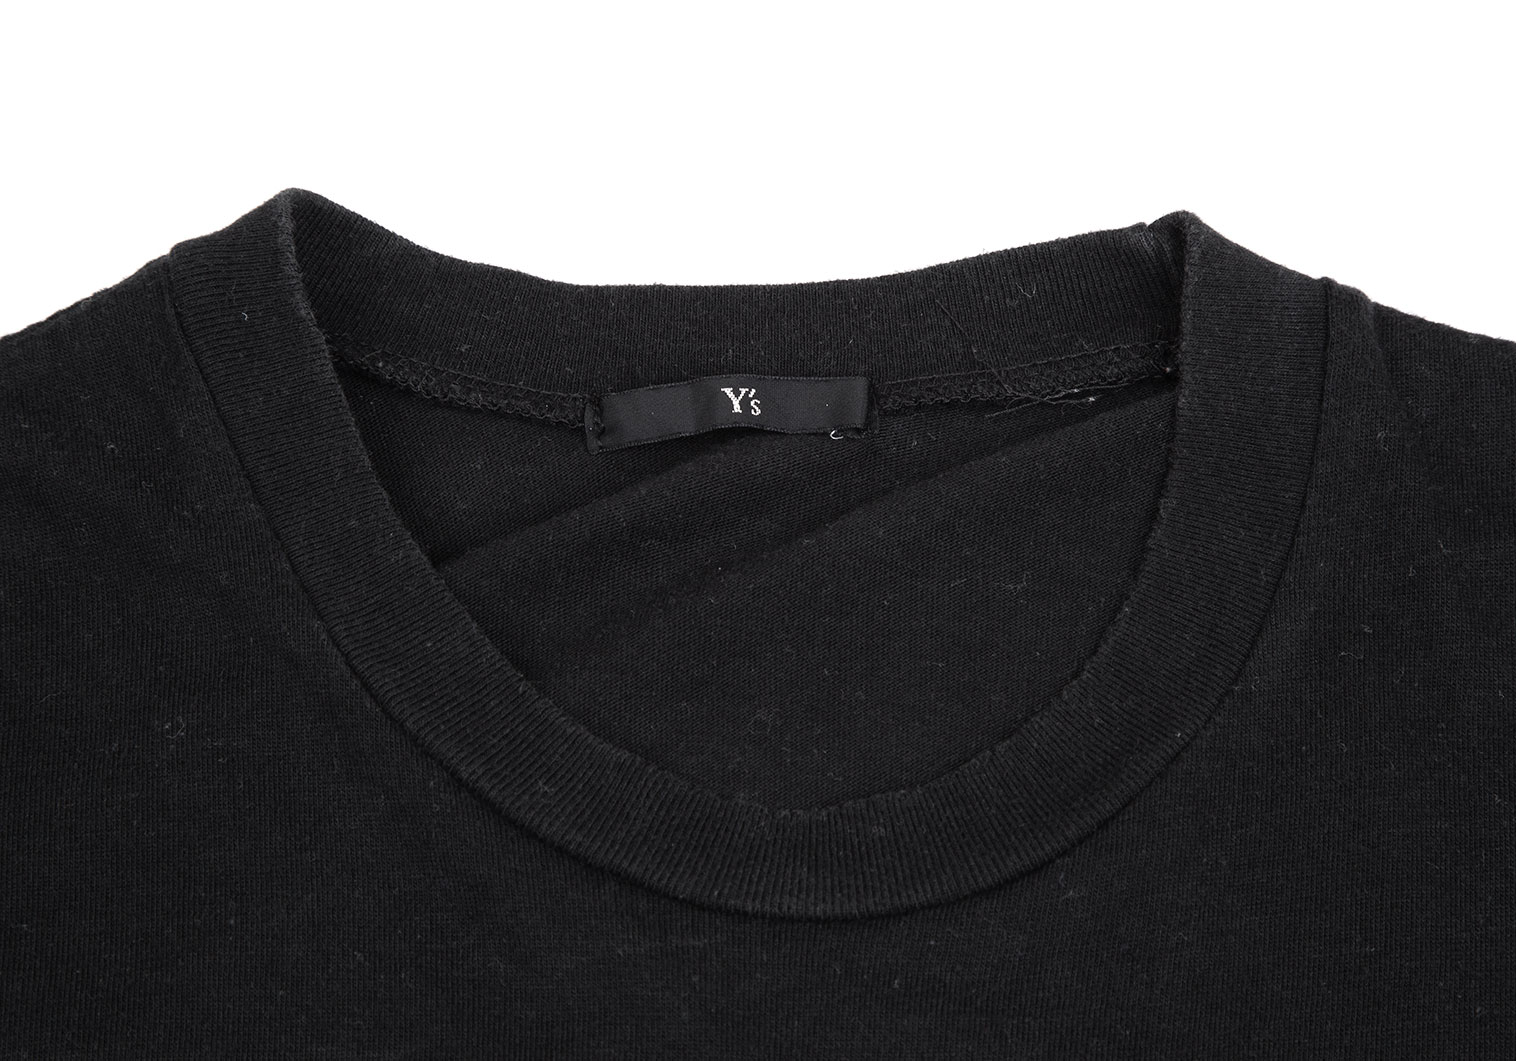 ワイズY's ワンポイントロゴプリントTシャツ 黒M位